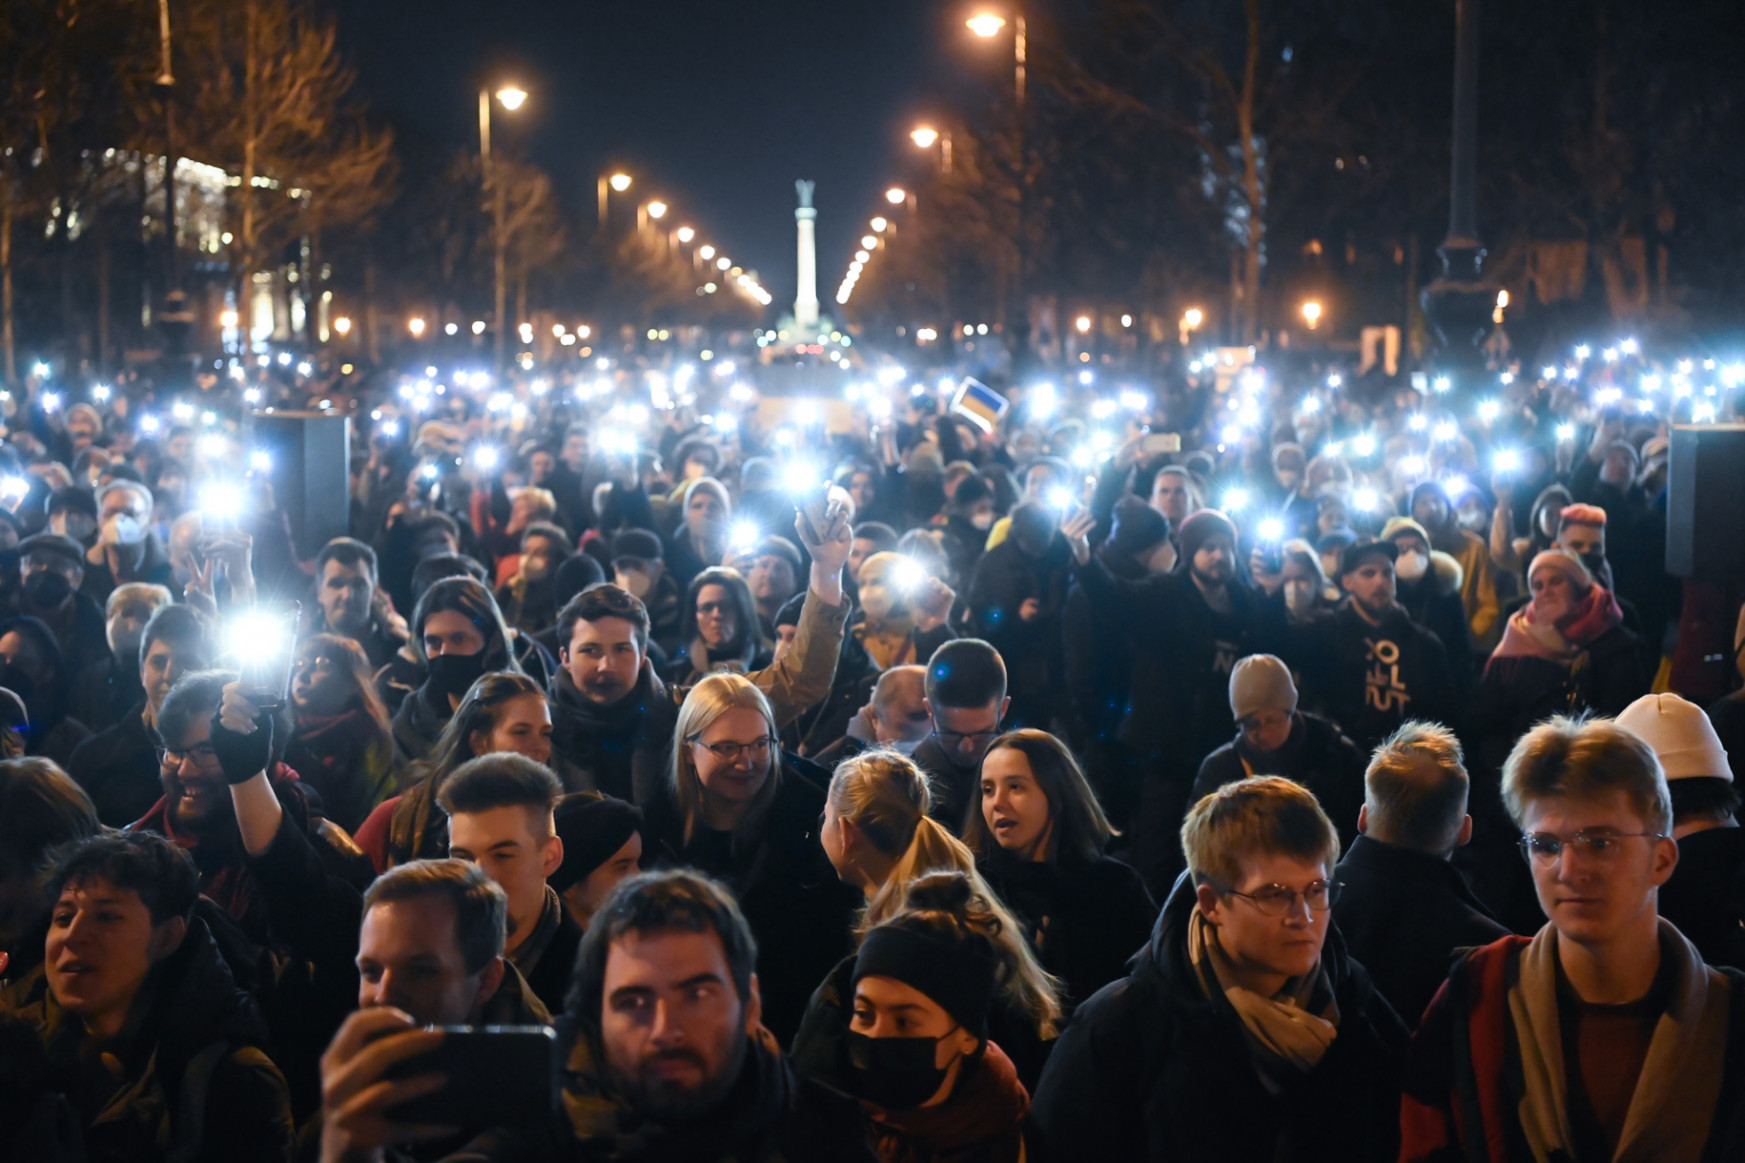 Márki-Zay Péter békéért imádkozott többezer tüntetővel az orosz követség előtt